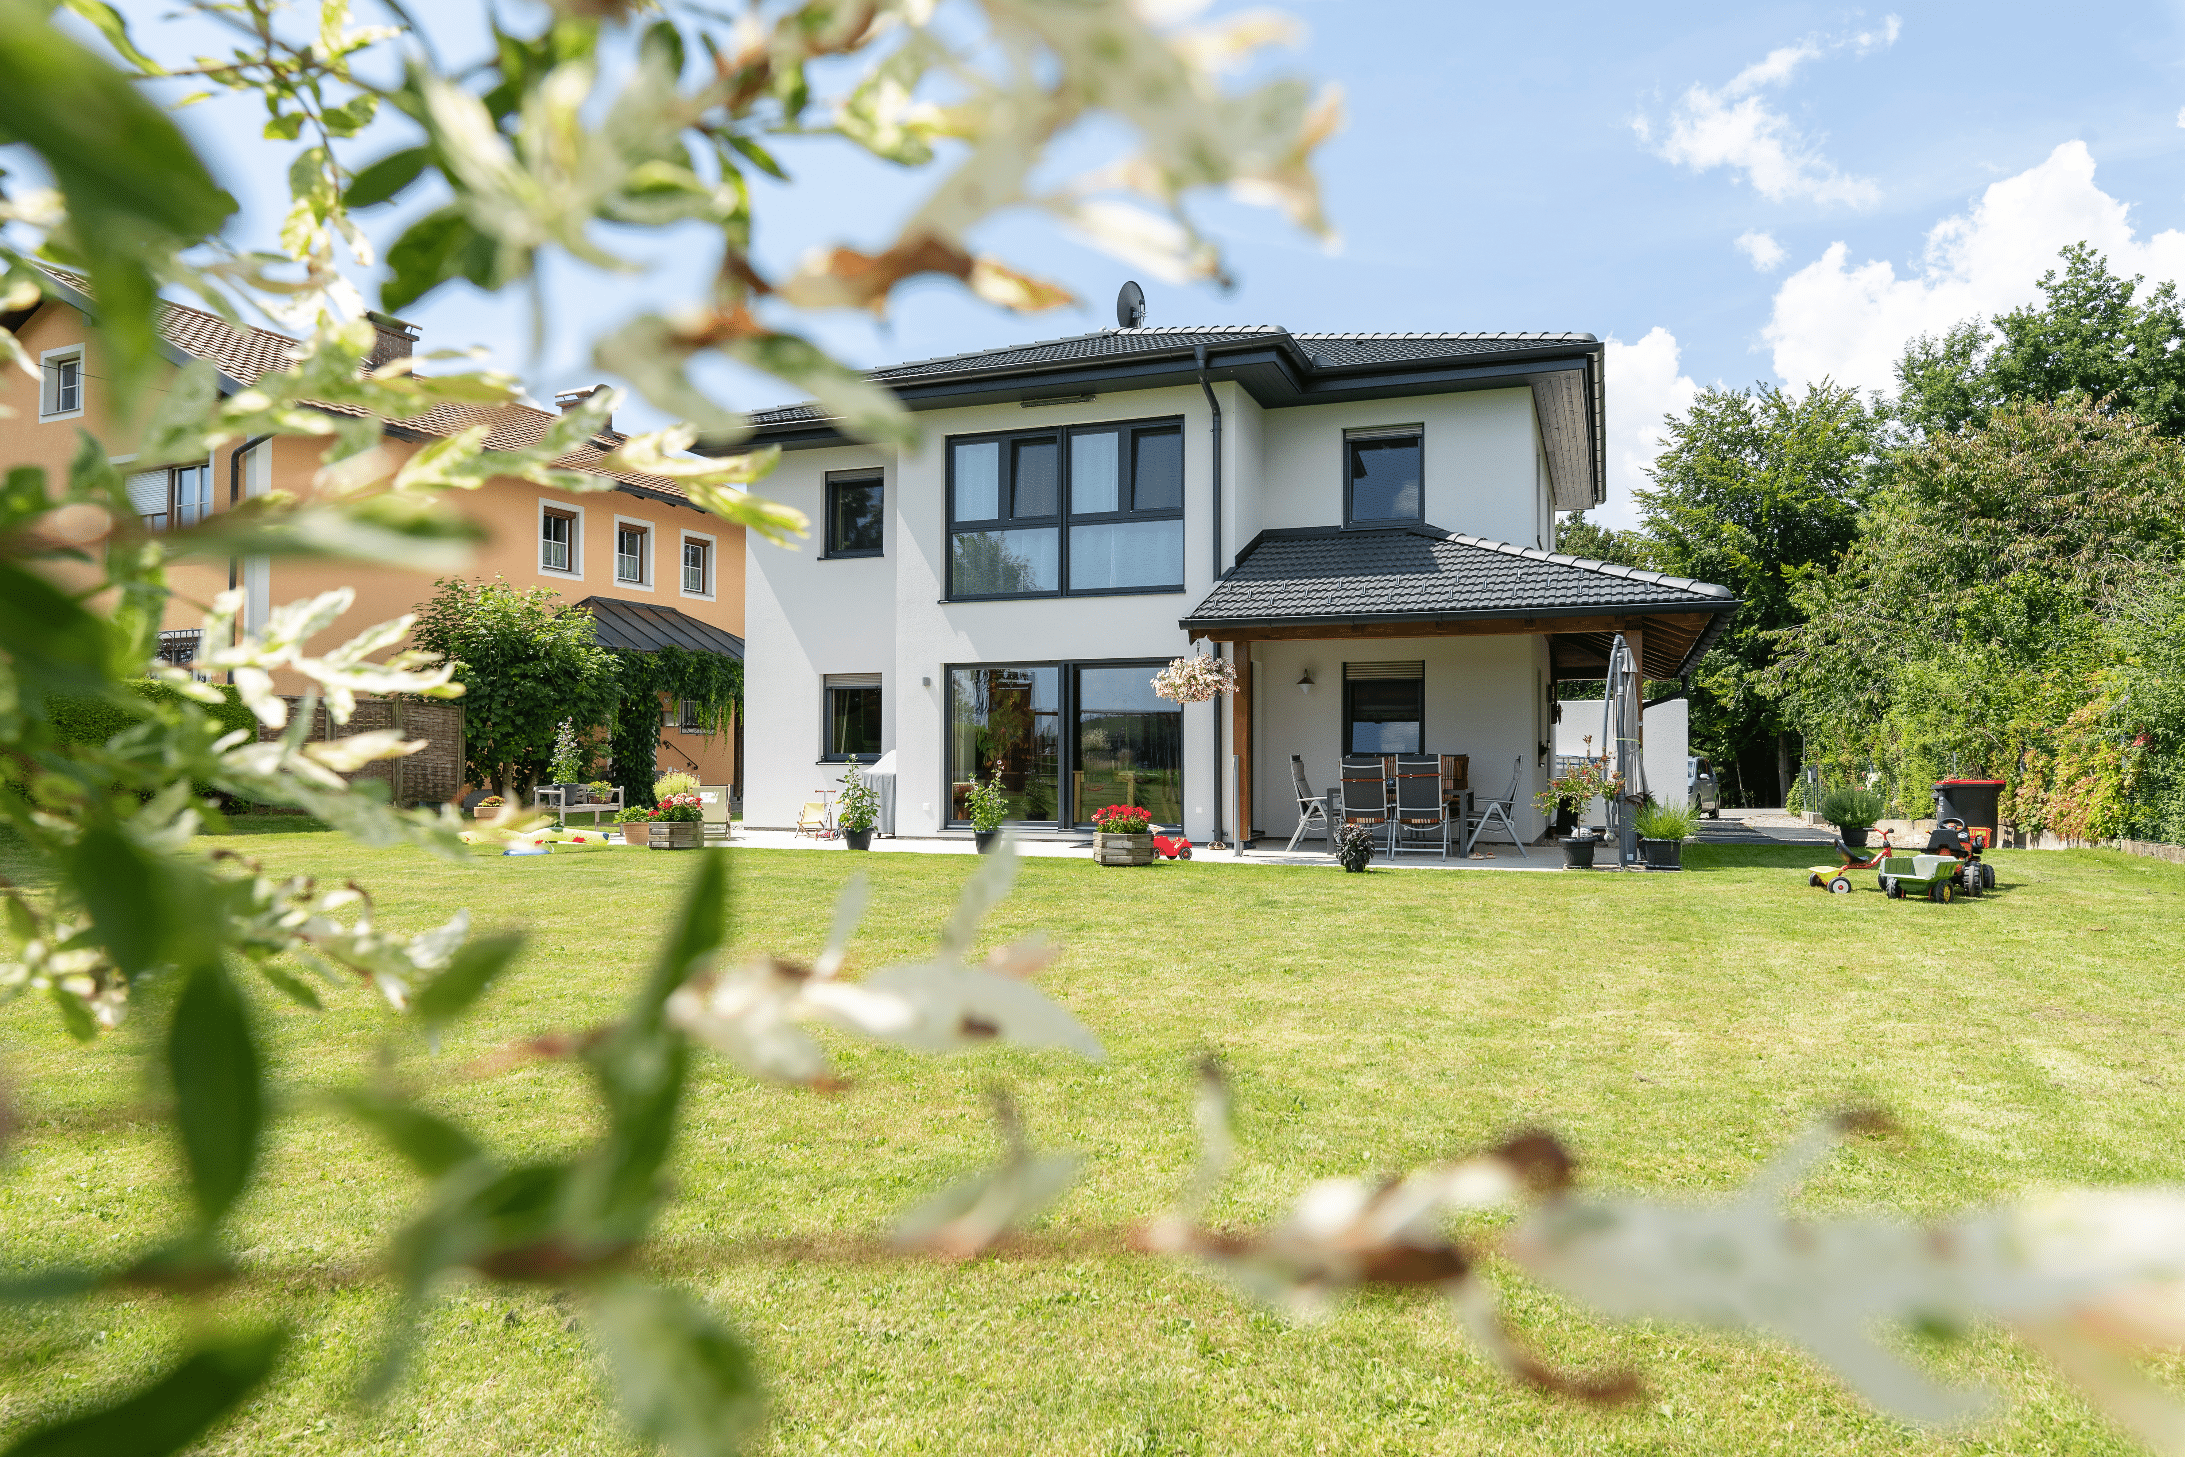 Hartl Haus zeigt ein zweistöckiges Einfamilienhaus in weiß, mit schwarzen Fensterrahmen und Dächern, einer überdachten Terrasse mit Gartenmöbeln und Grünfläche.